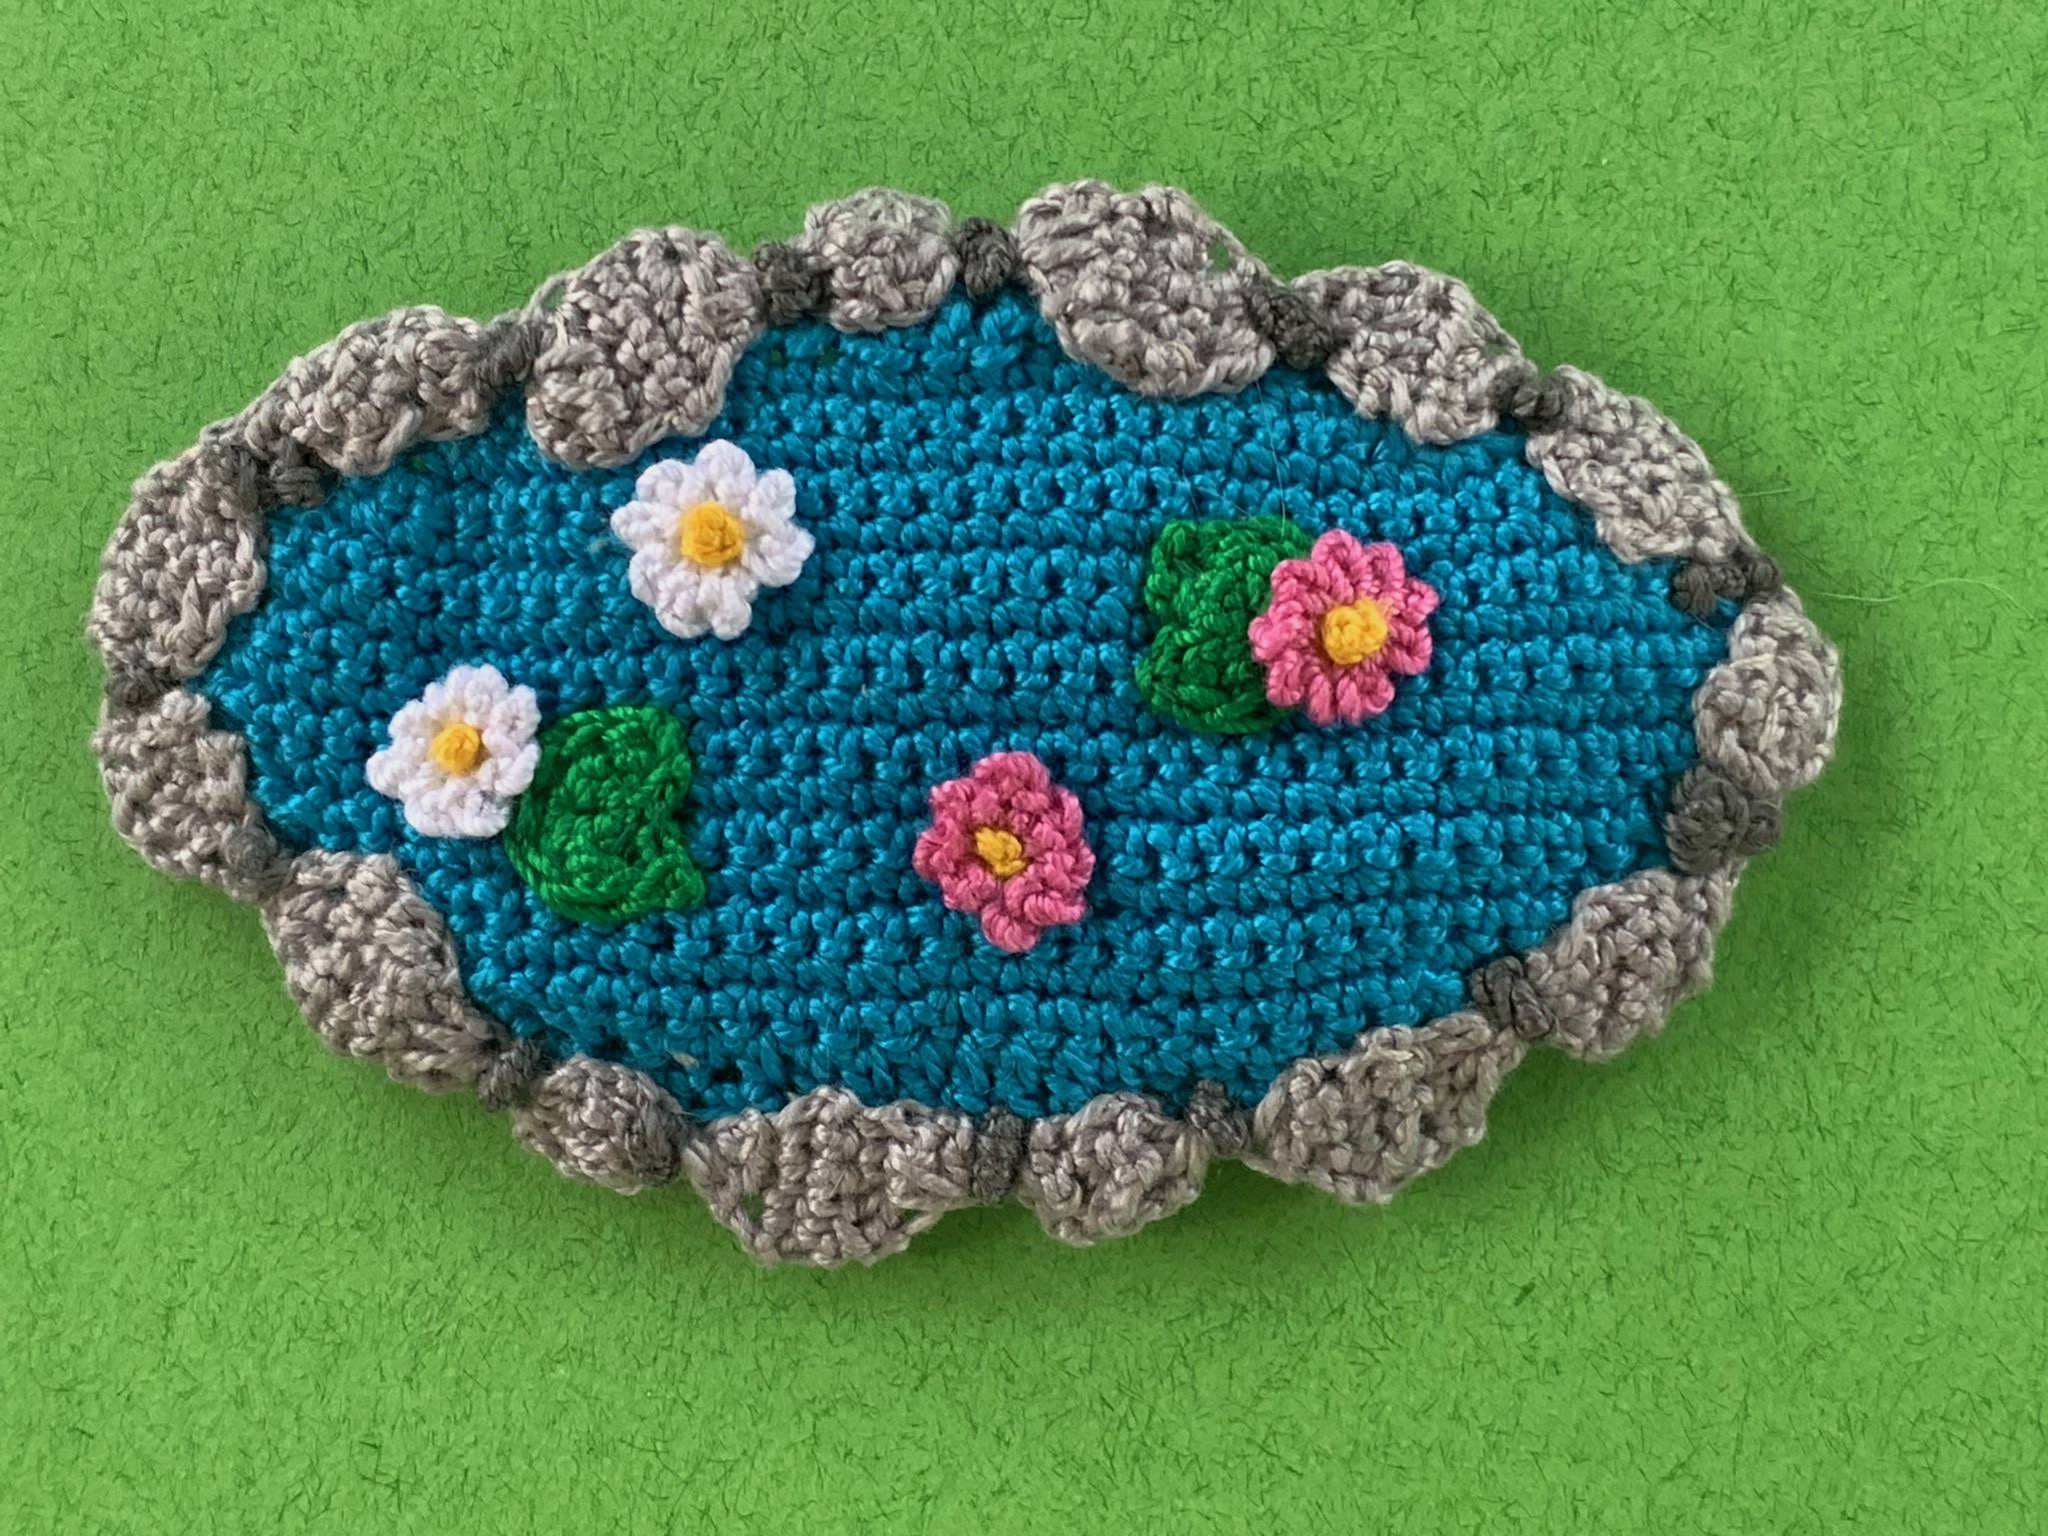 Finished crochet pond 2 ply landscape